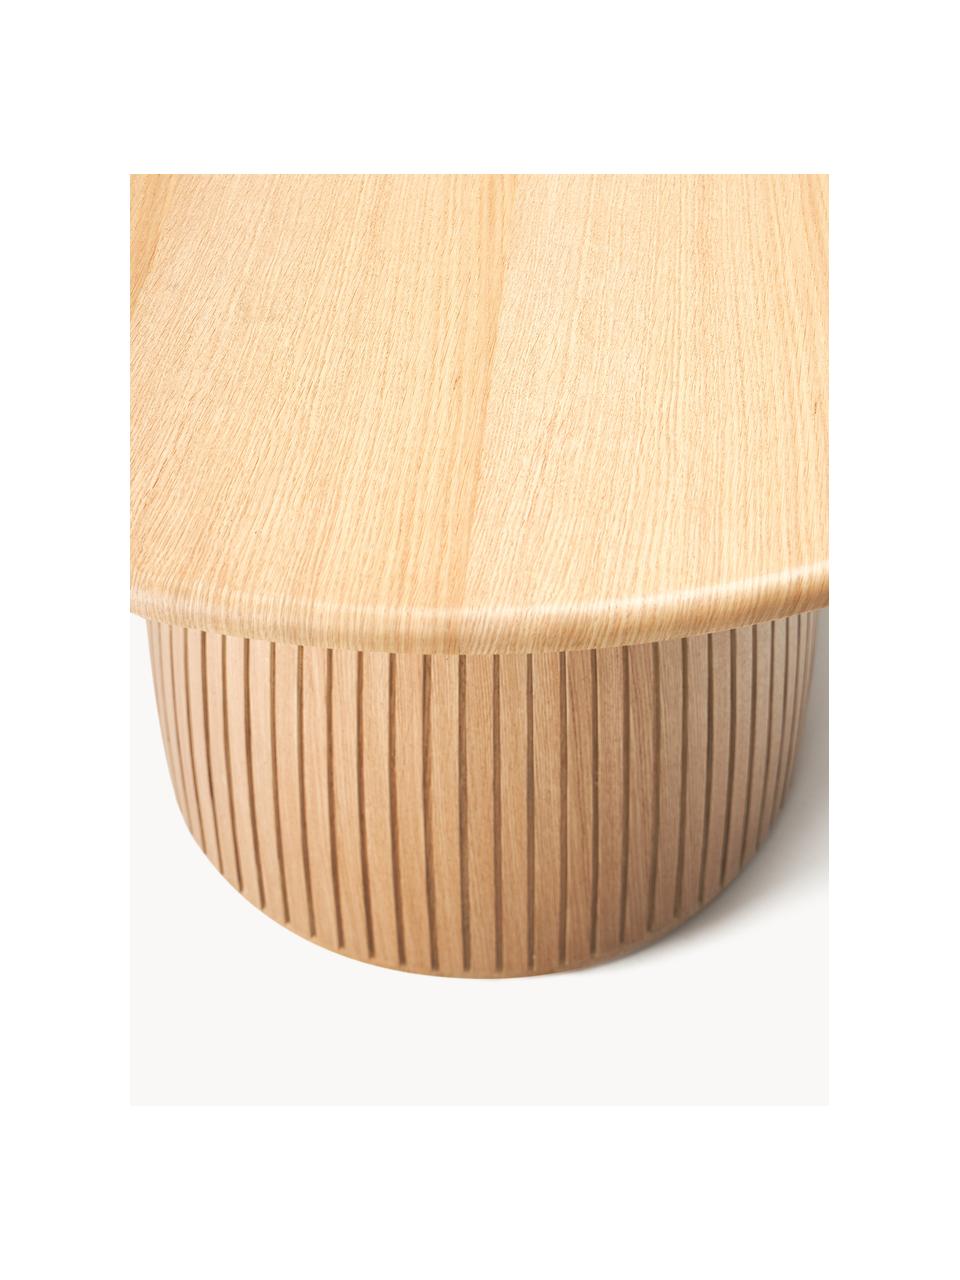 Kulatý jídelní stůl s drážkovanou strukturou Nelly, různé velikosti, Dubová dýha, s dřevovláknitá deska střední hustoty (MDF)

Tento produkt je vyroben z udržitelných zdrojů dřeva s certifikací FSC®., Dubové dřevo, Ø 140 cm